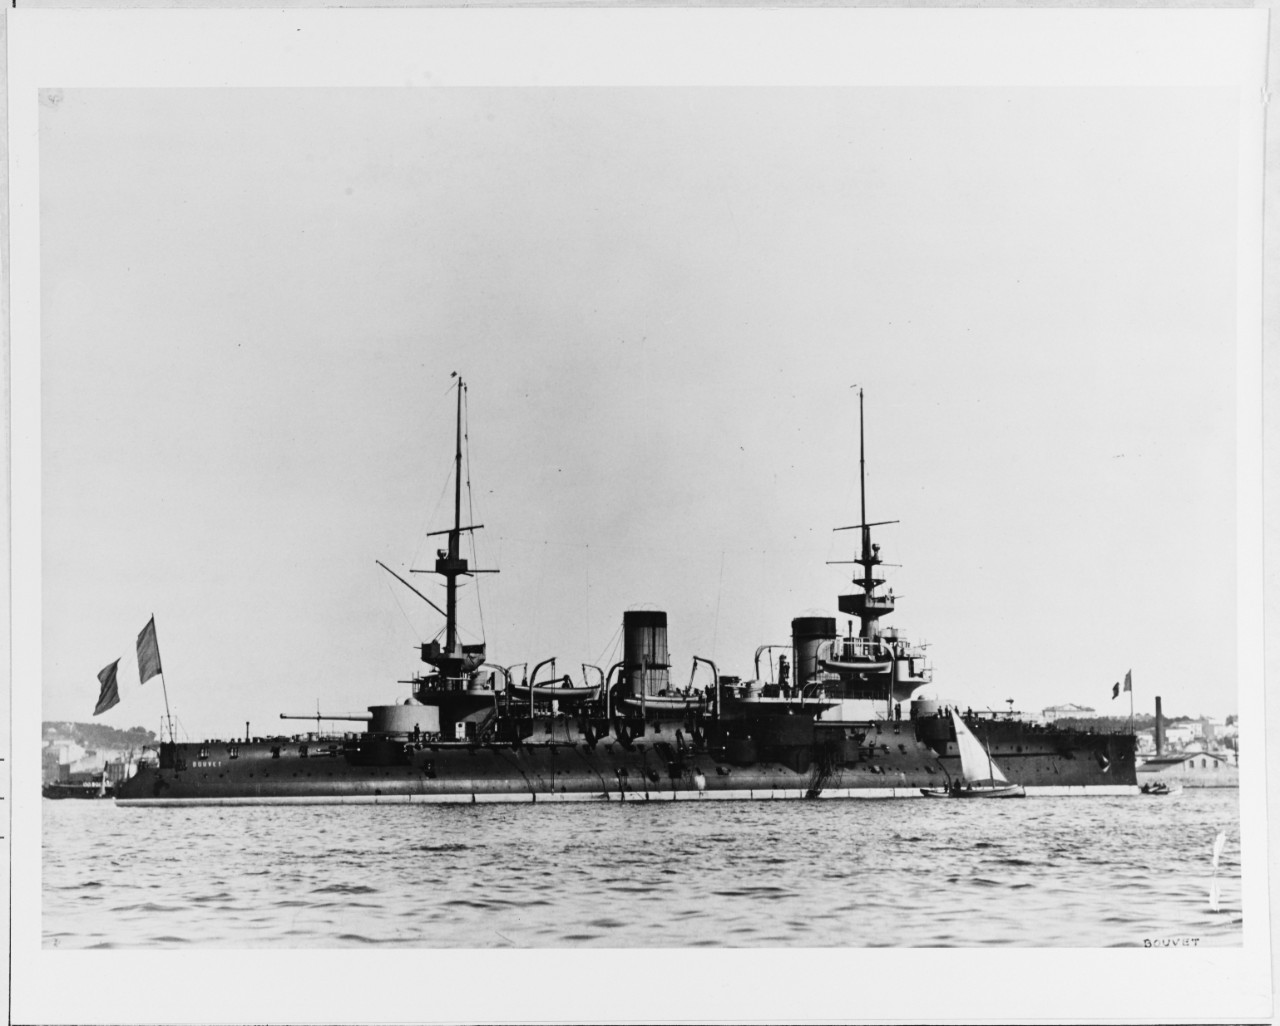 BOUVET (French battleship, 1896)